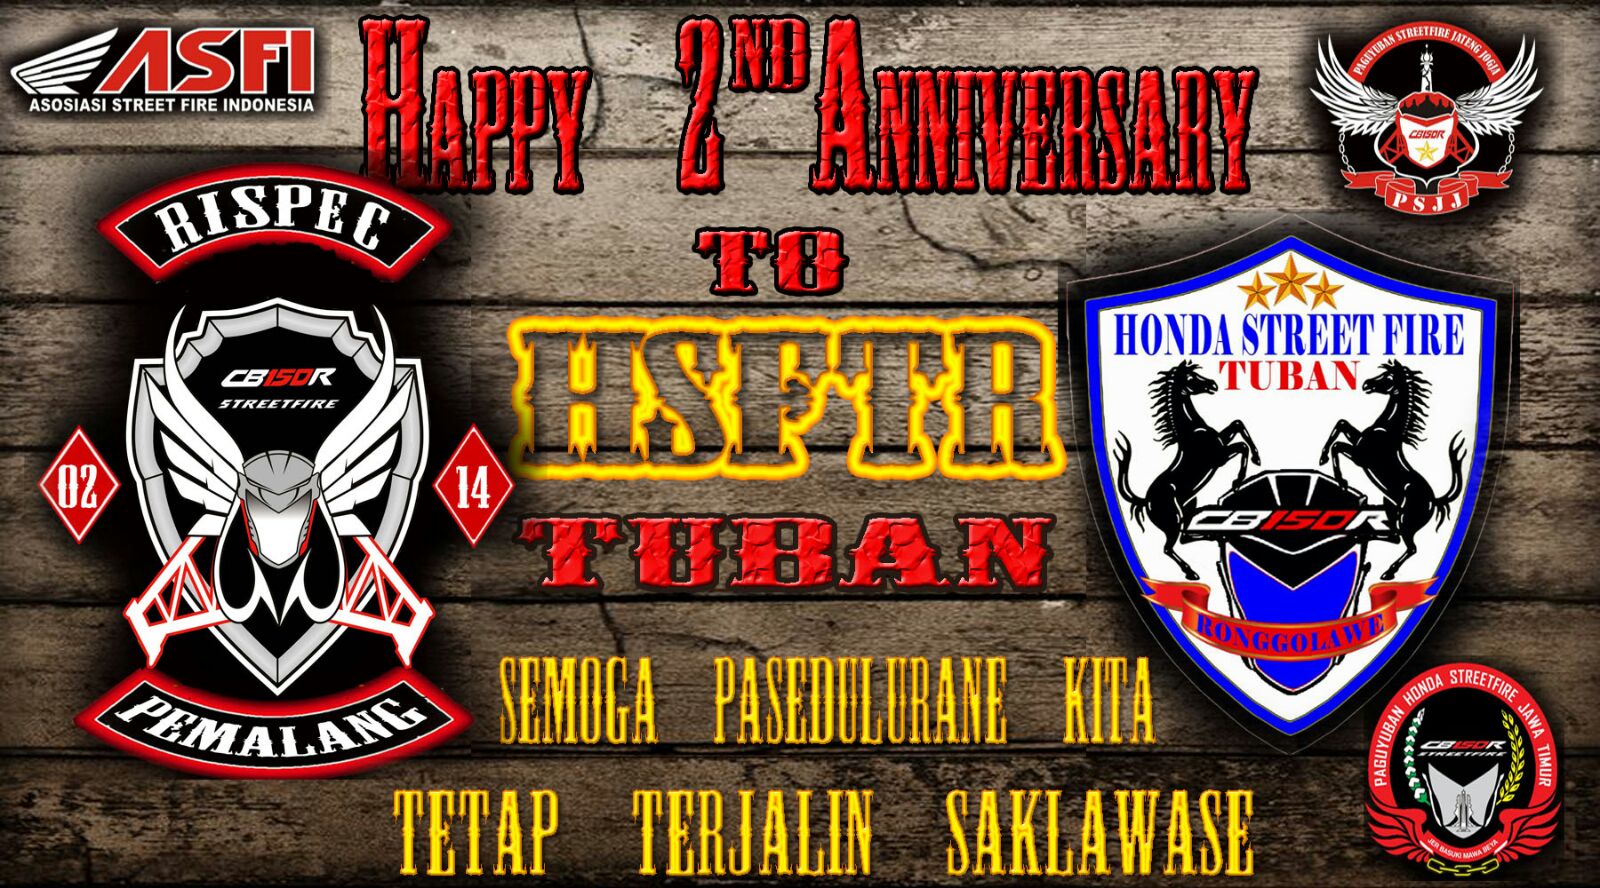 Rispec Pemalang Road To 2nd Anniversary Hsftr Tuban Ronggolawe